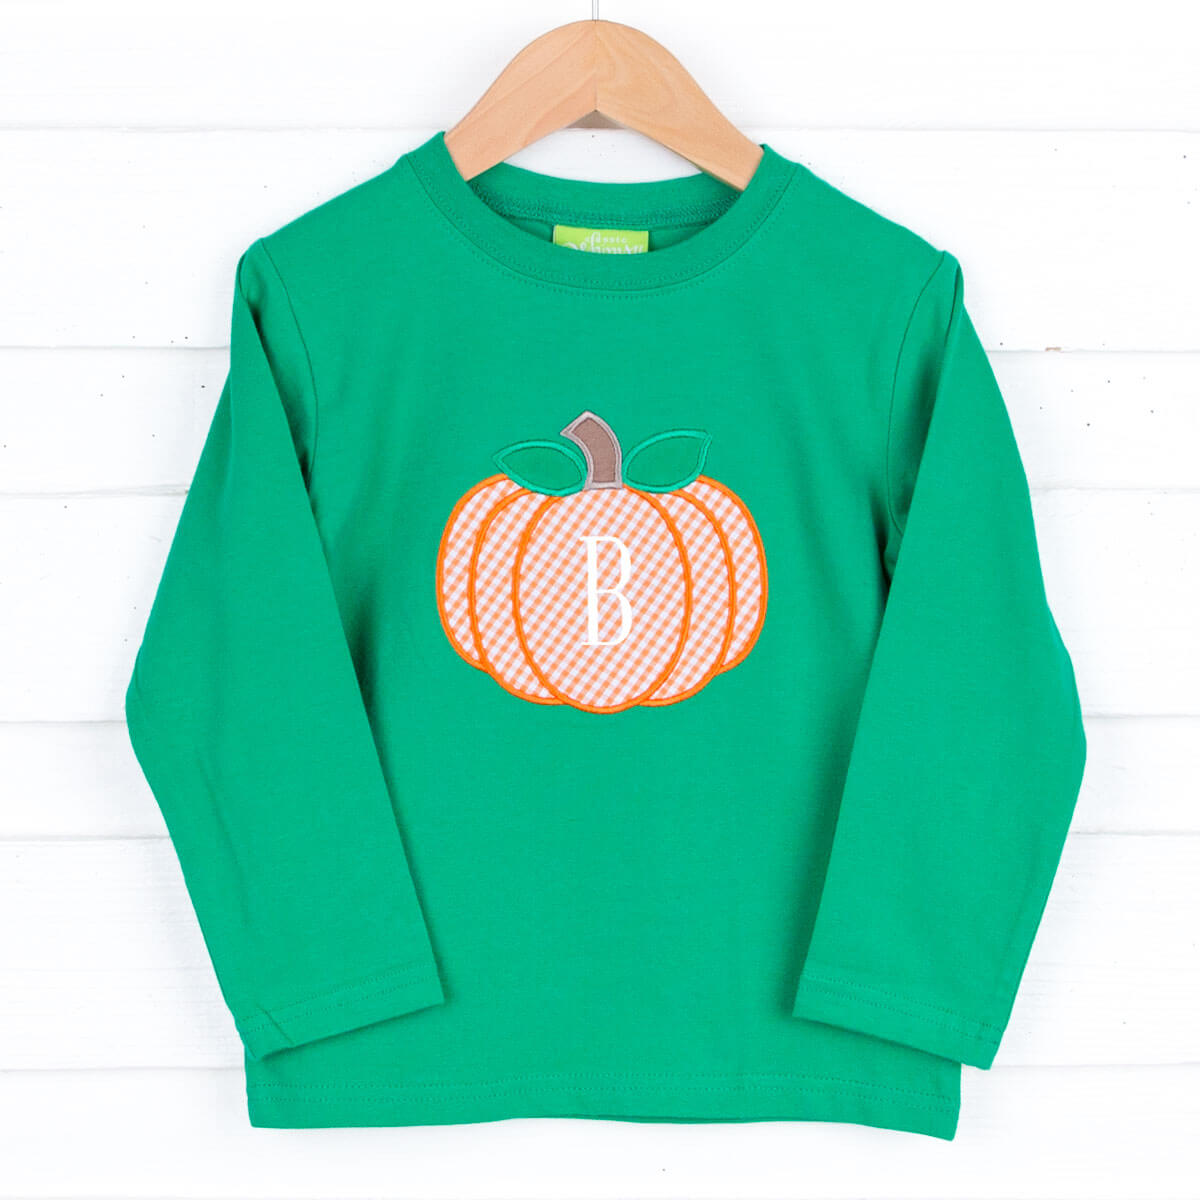 The Great Pumpkin Green Long Sleeve Shirt